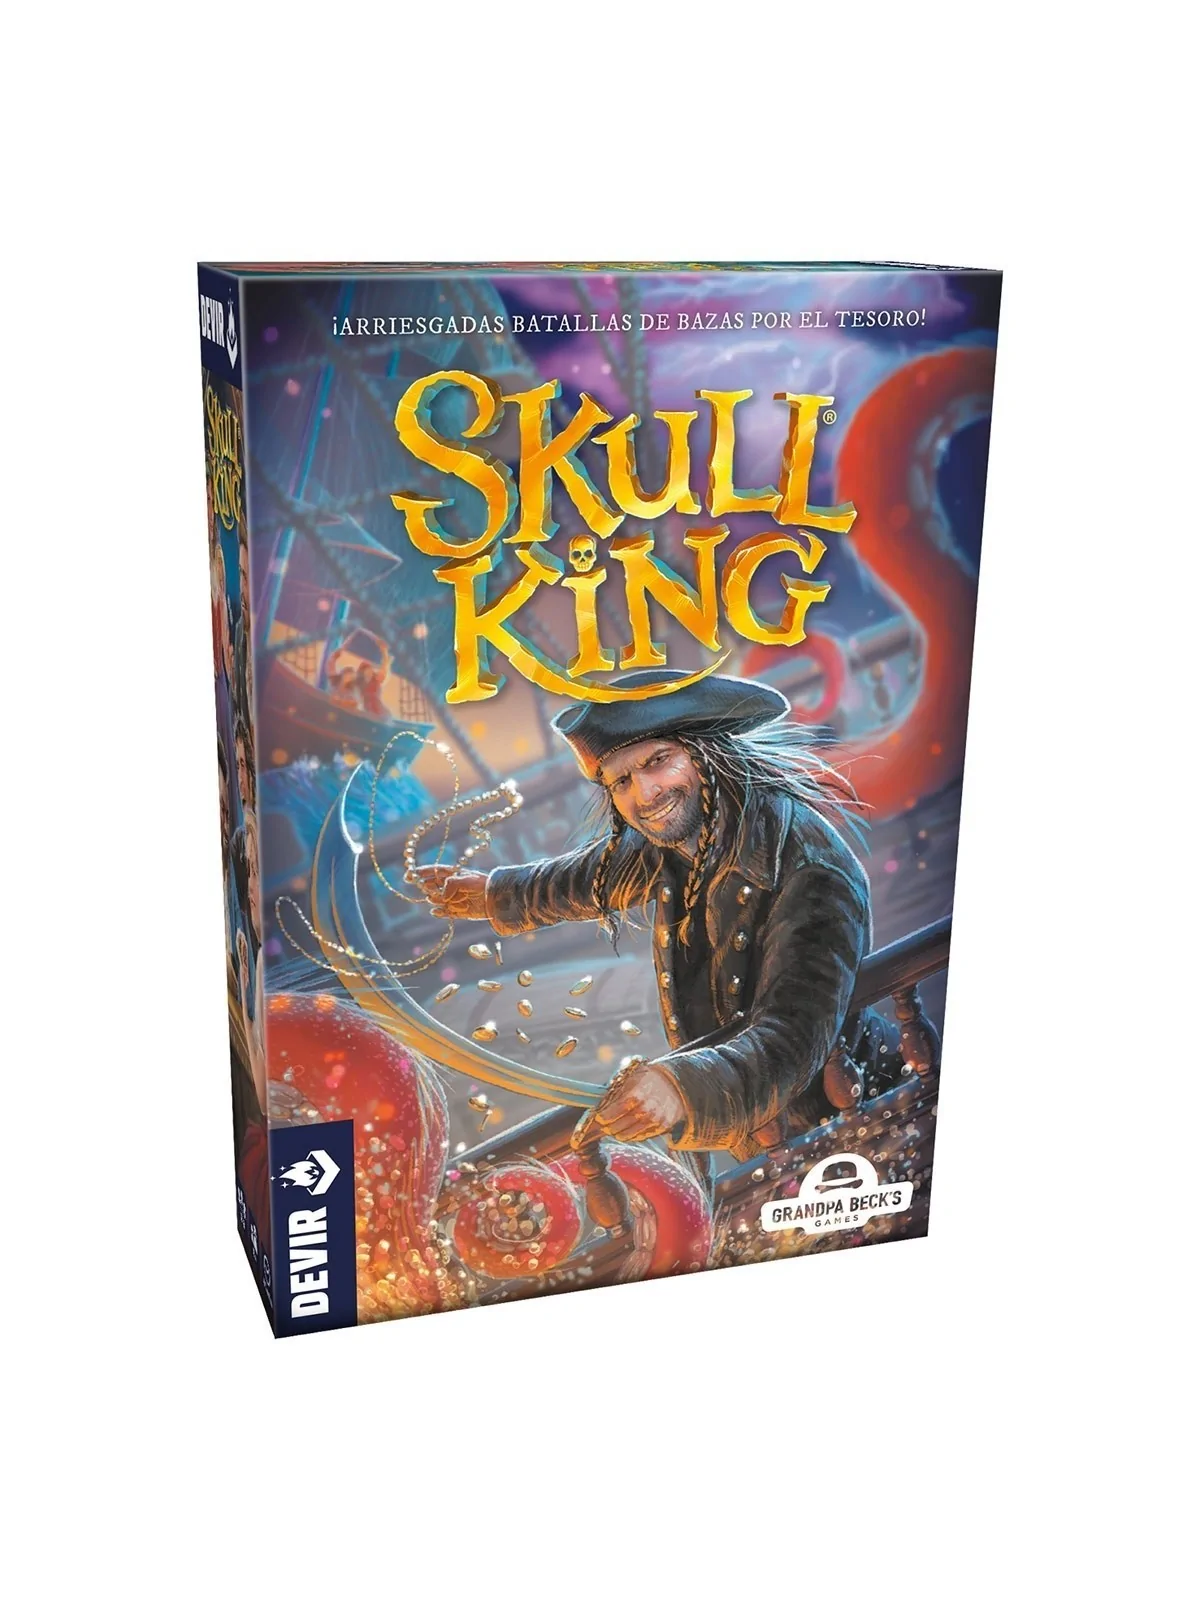 Comprar Skull King barato al mejor precio 16,99 € de Devir